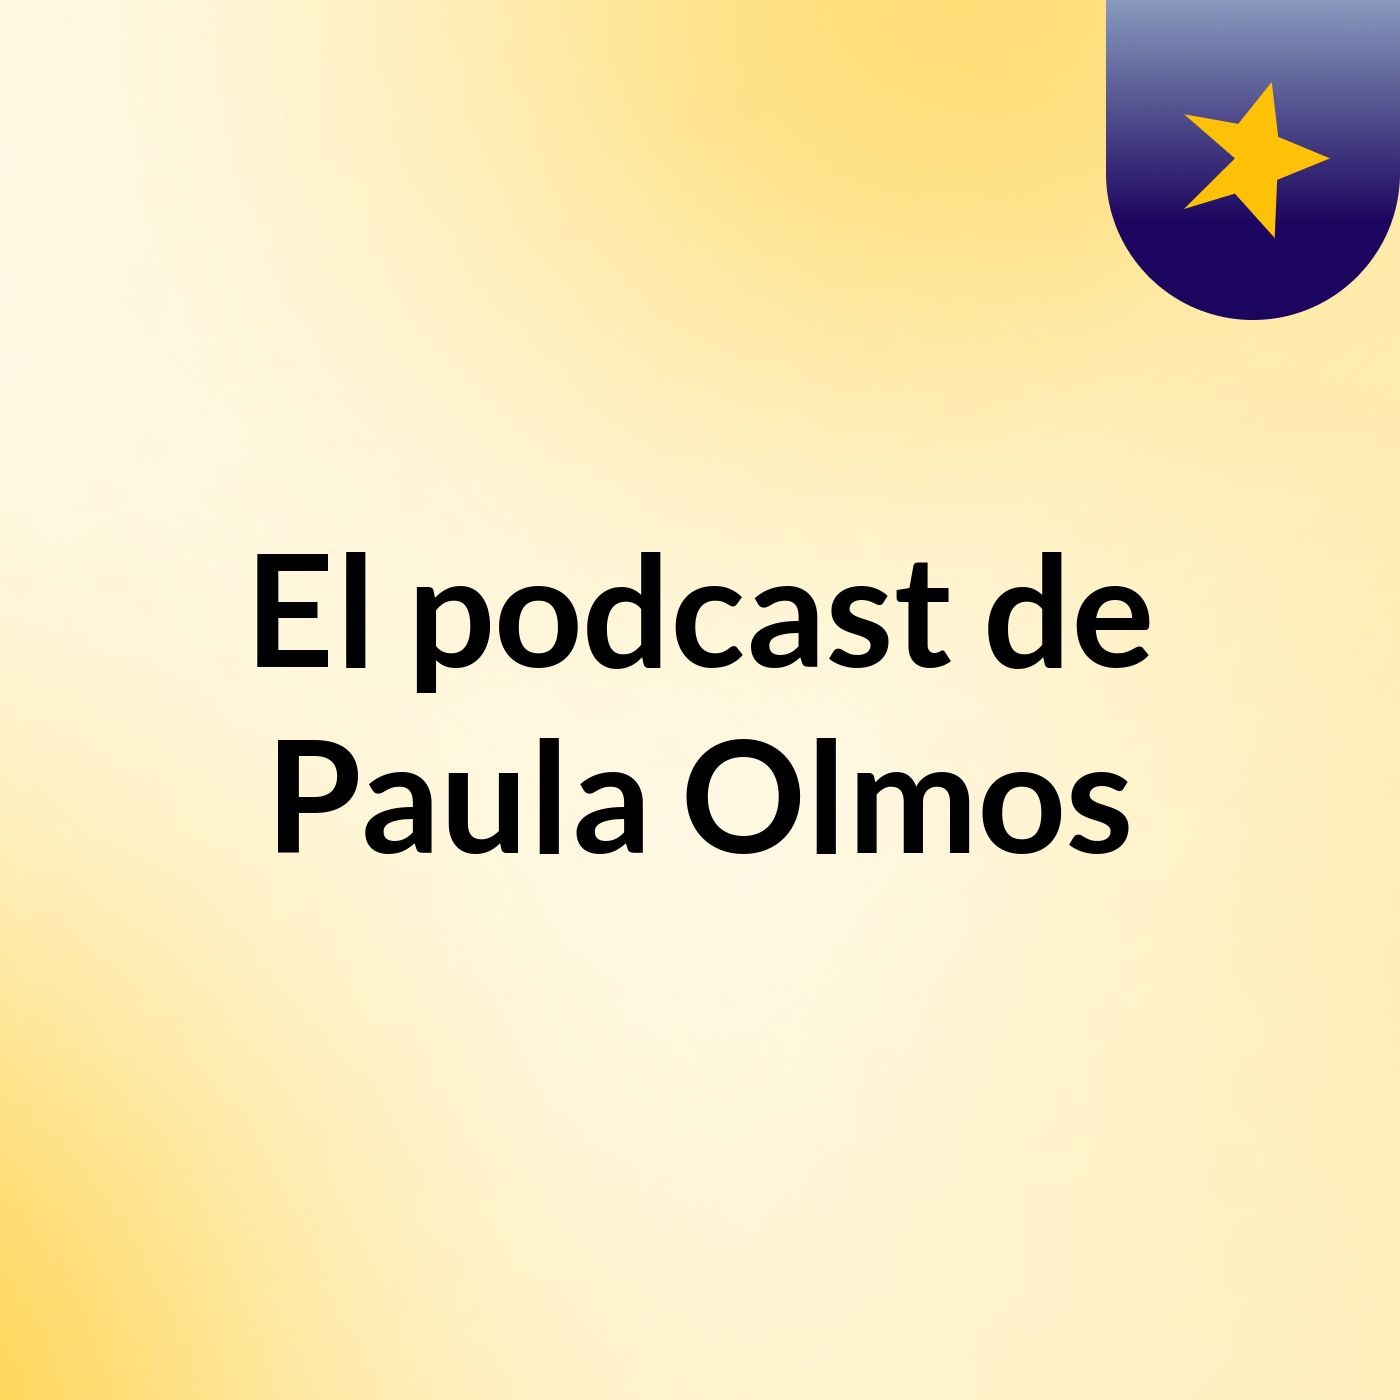 El podcast de Paula Olmos